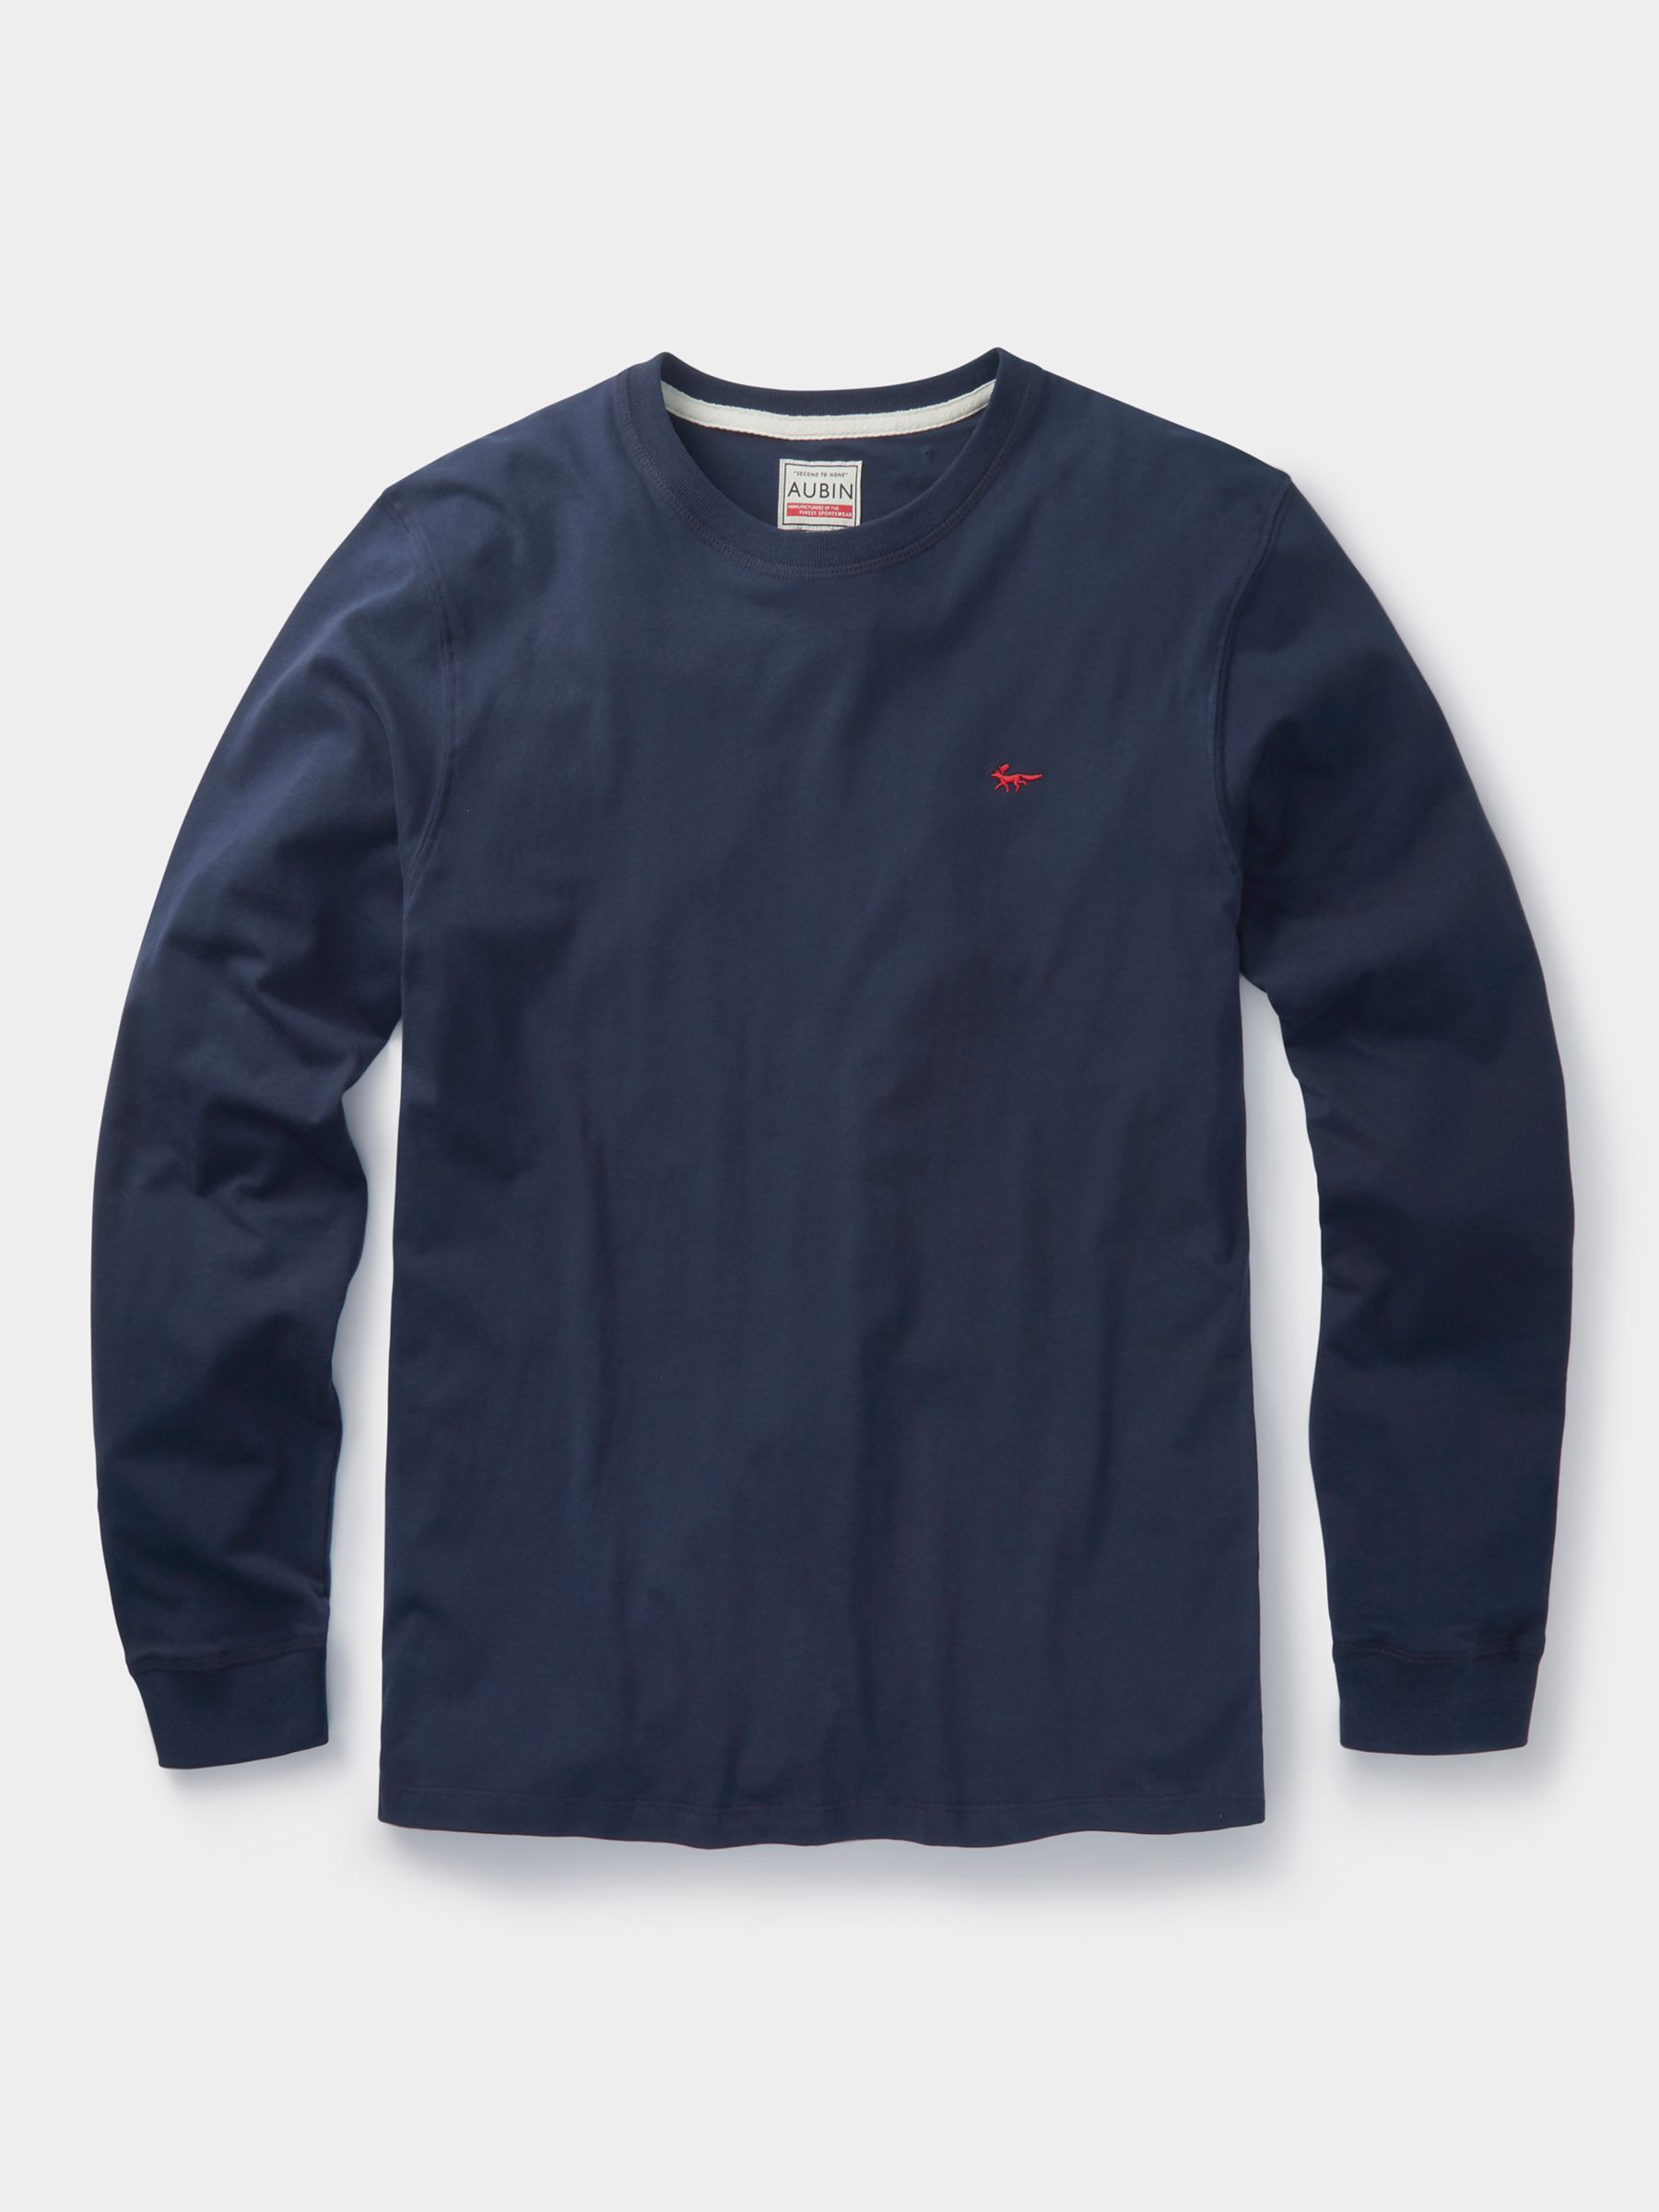 Aubin Buttermere Long Sleeve Cotton Logo T-Shirt, Navy, S